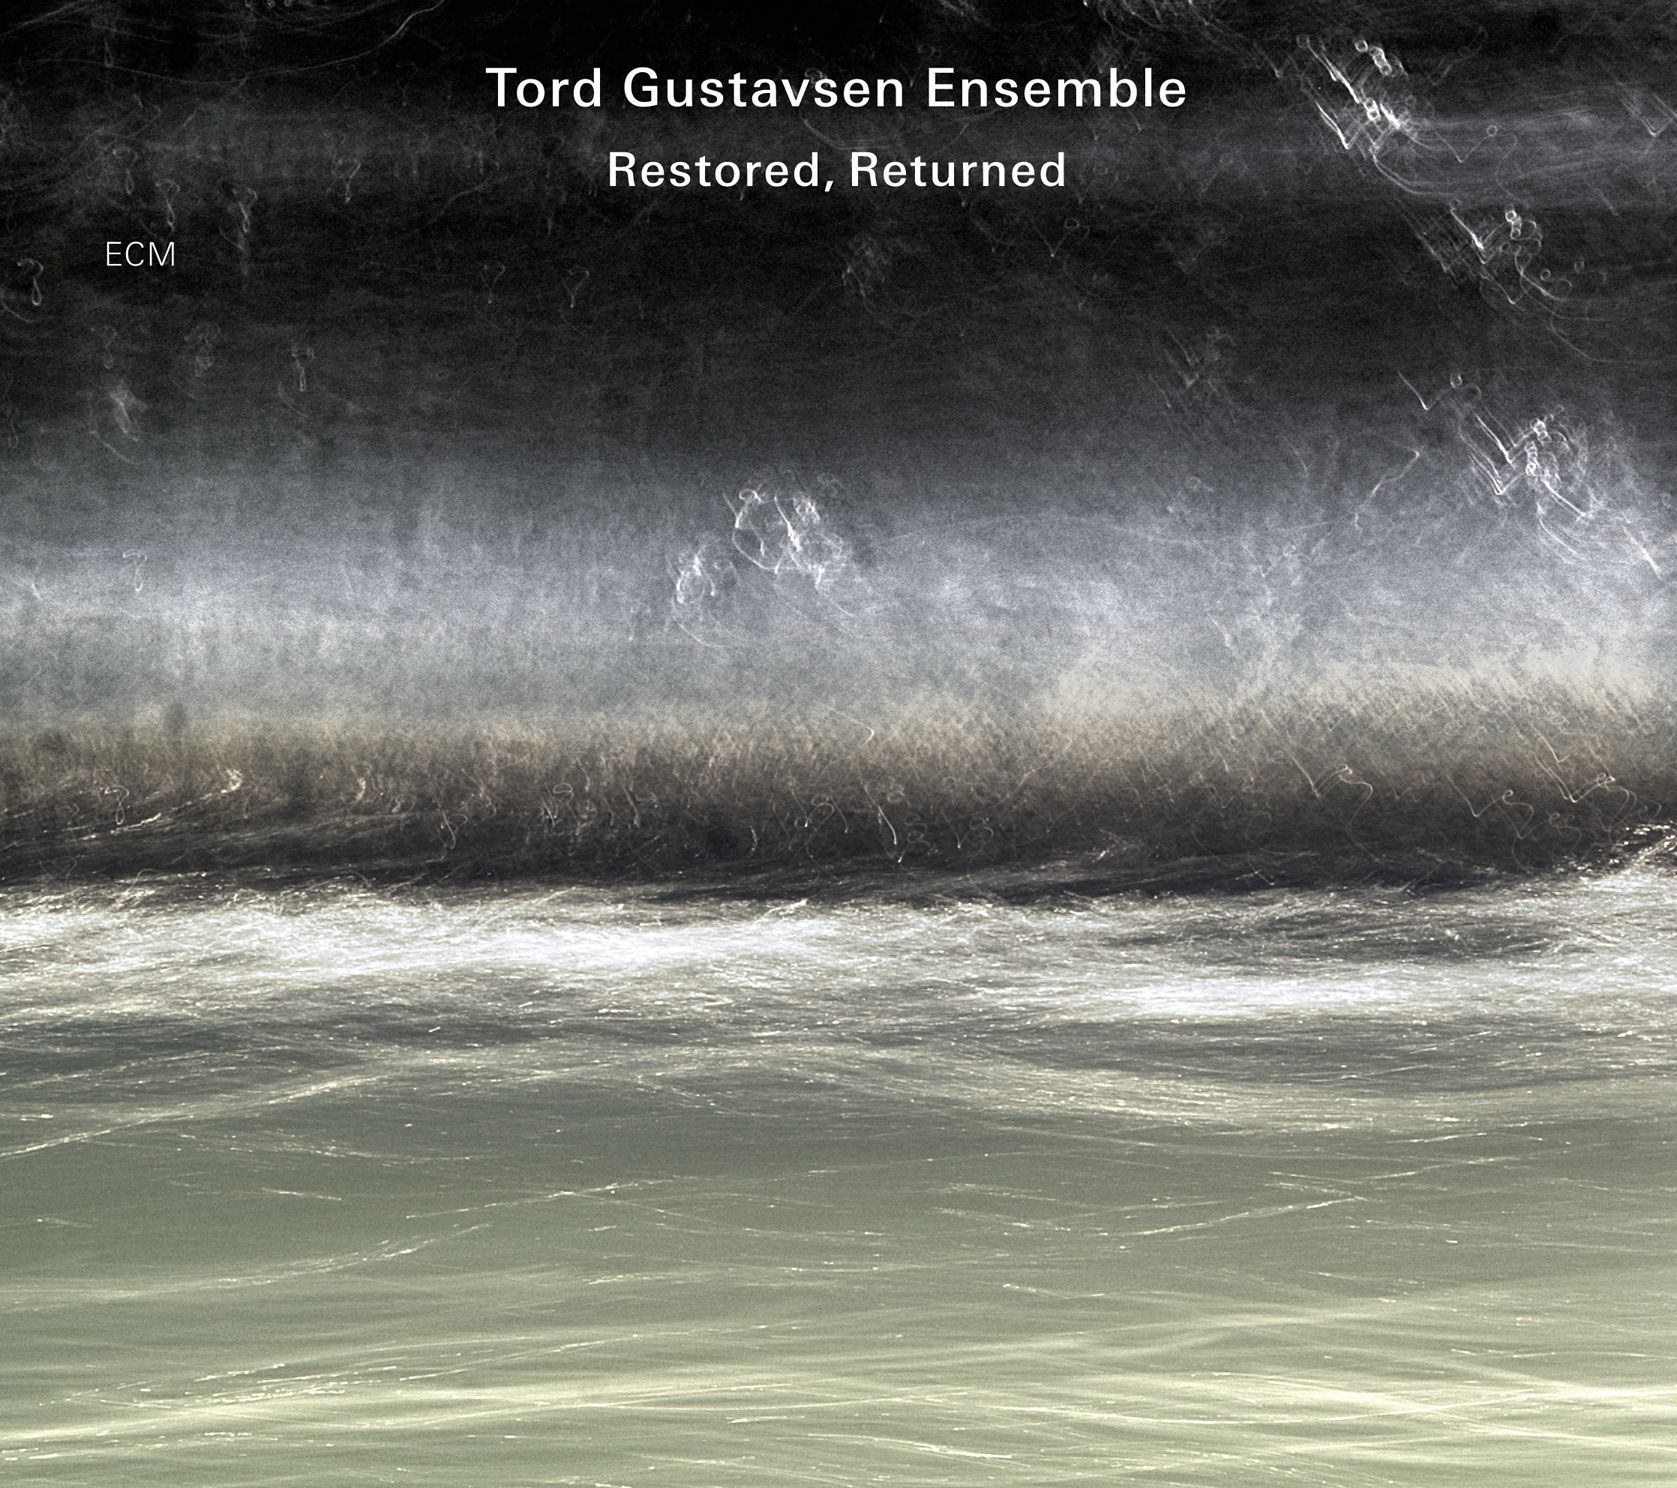 Tord Gustavsen Ensemble Restored, Returned